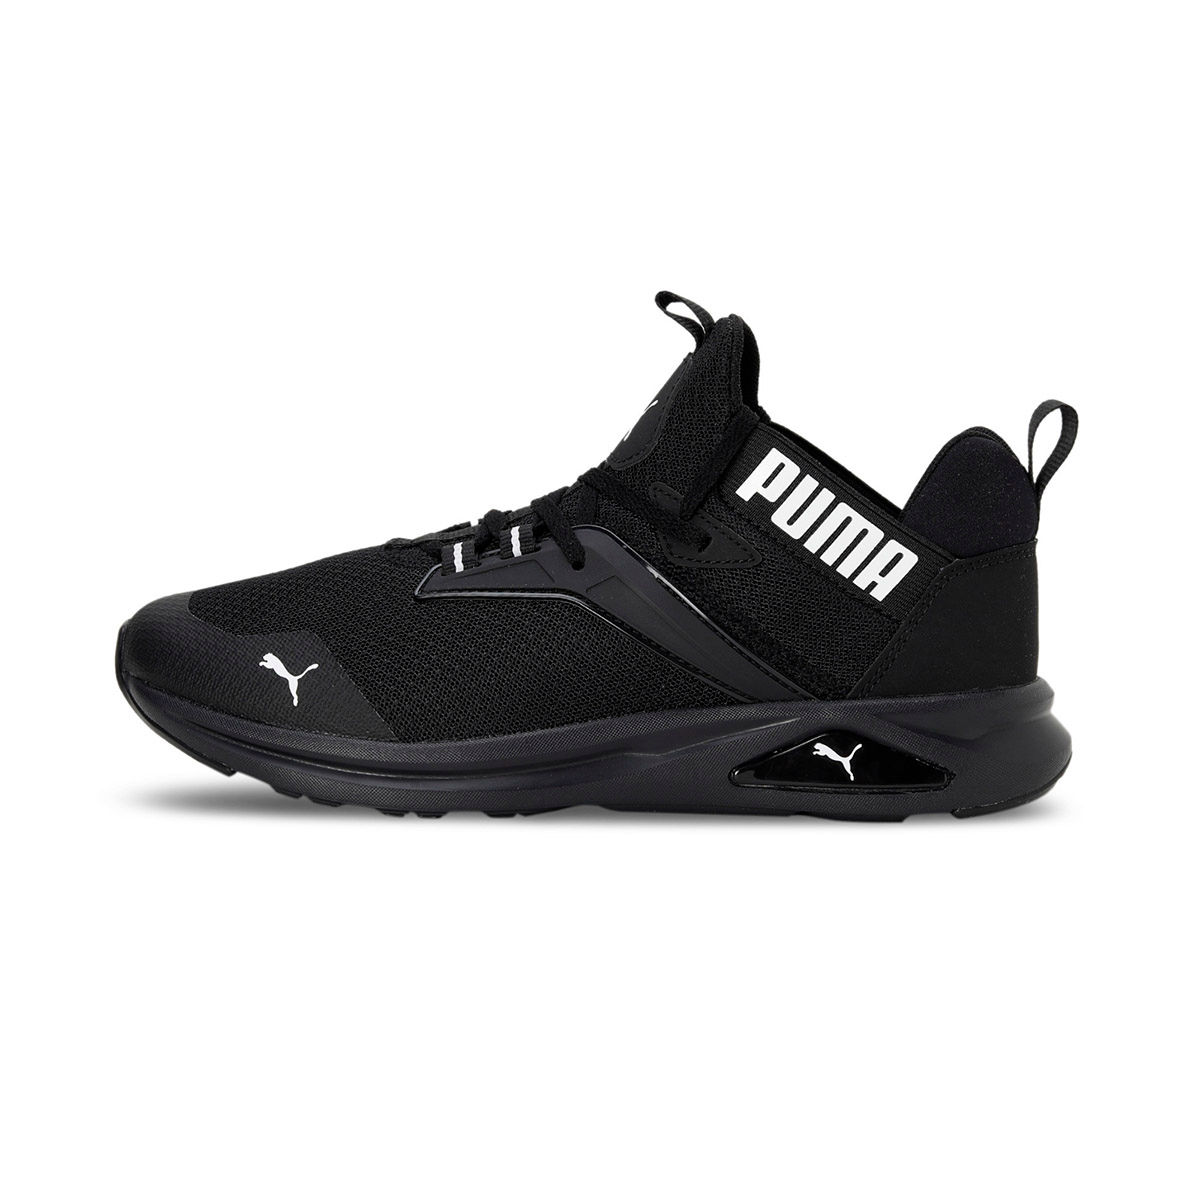 Puma Enzo 2 Refresh Black Running Shoes: Buy Puma Enzo 2 Refresh Black ...